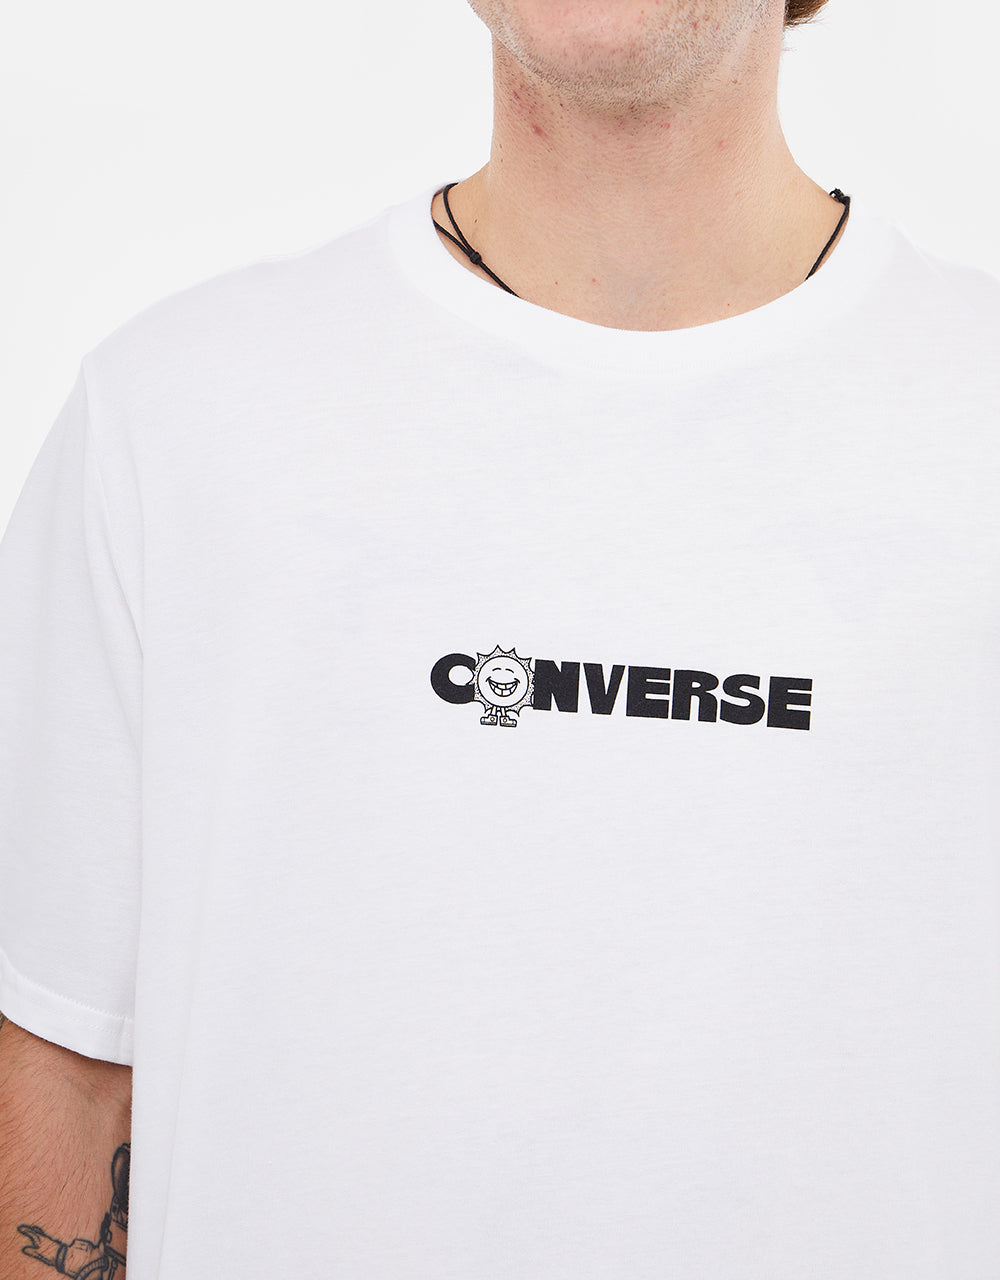 Converse Earth Moon Sun T-Shirt - White